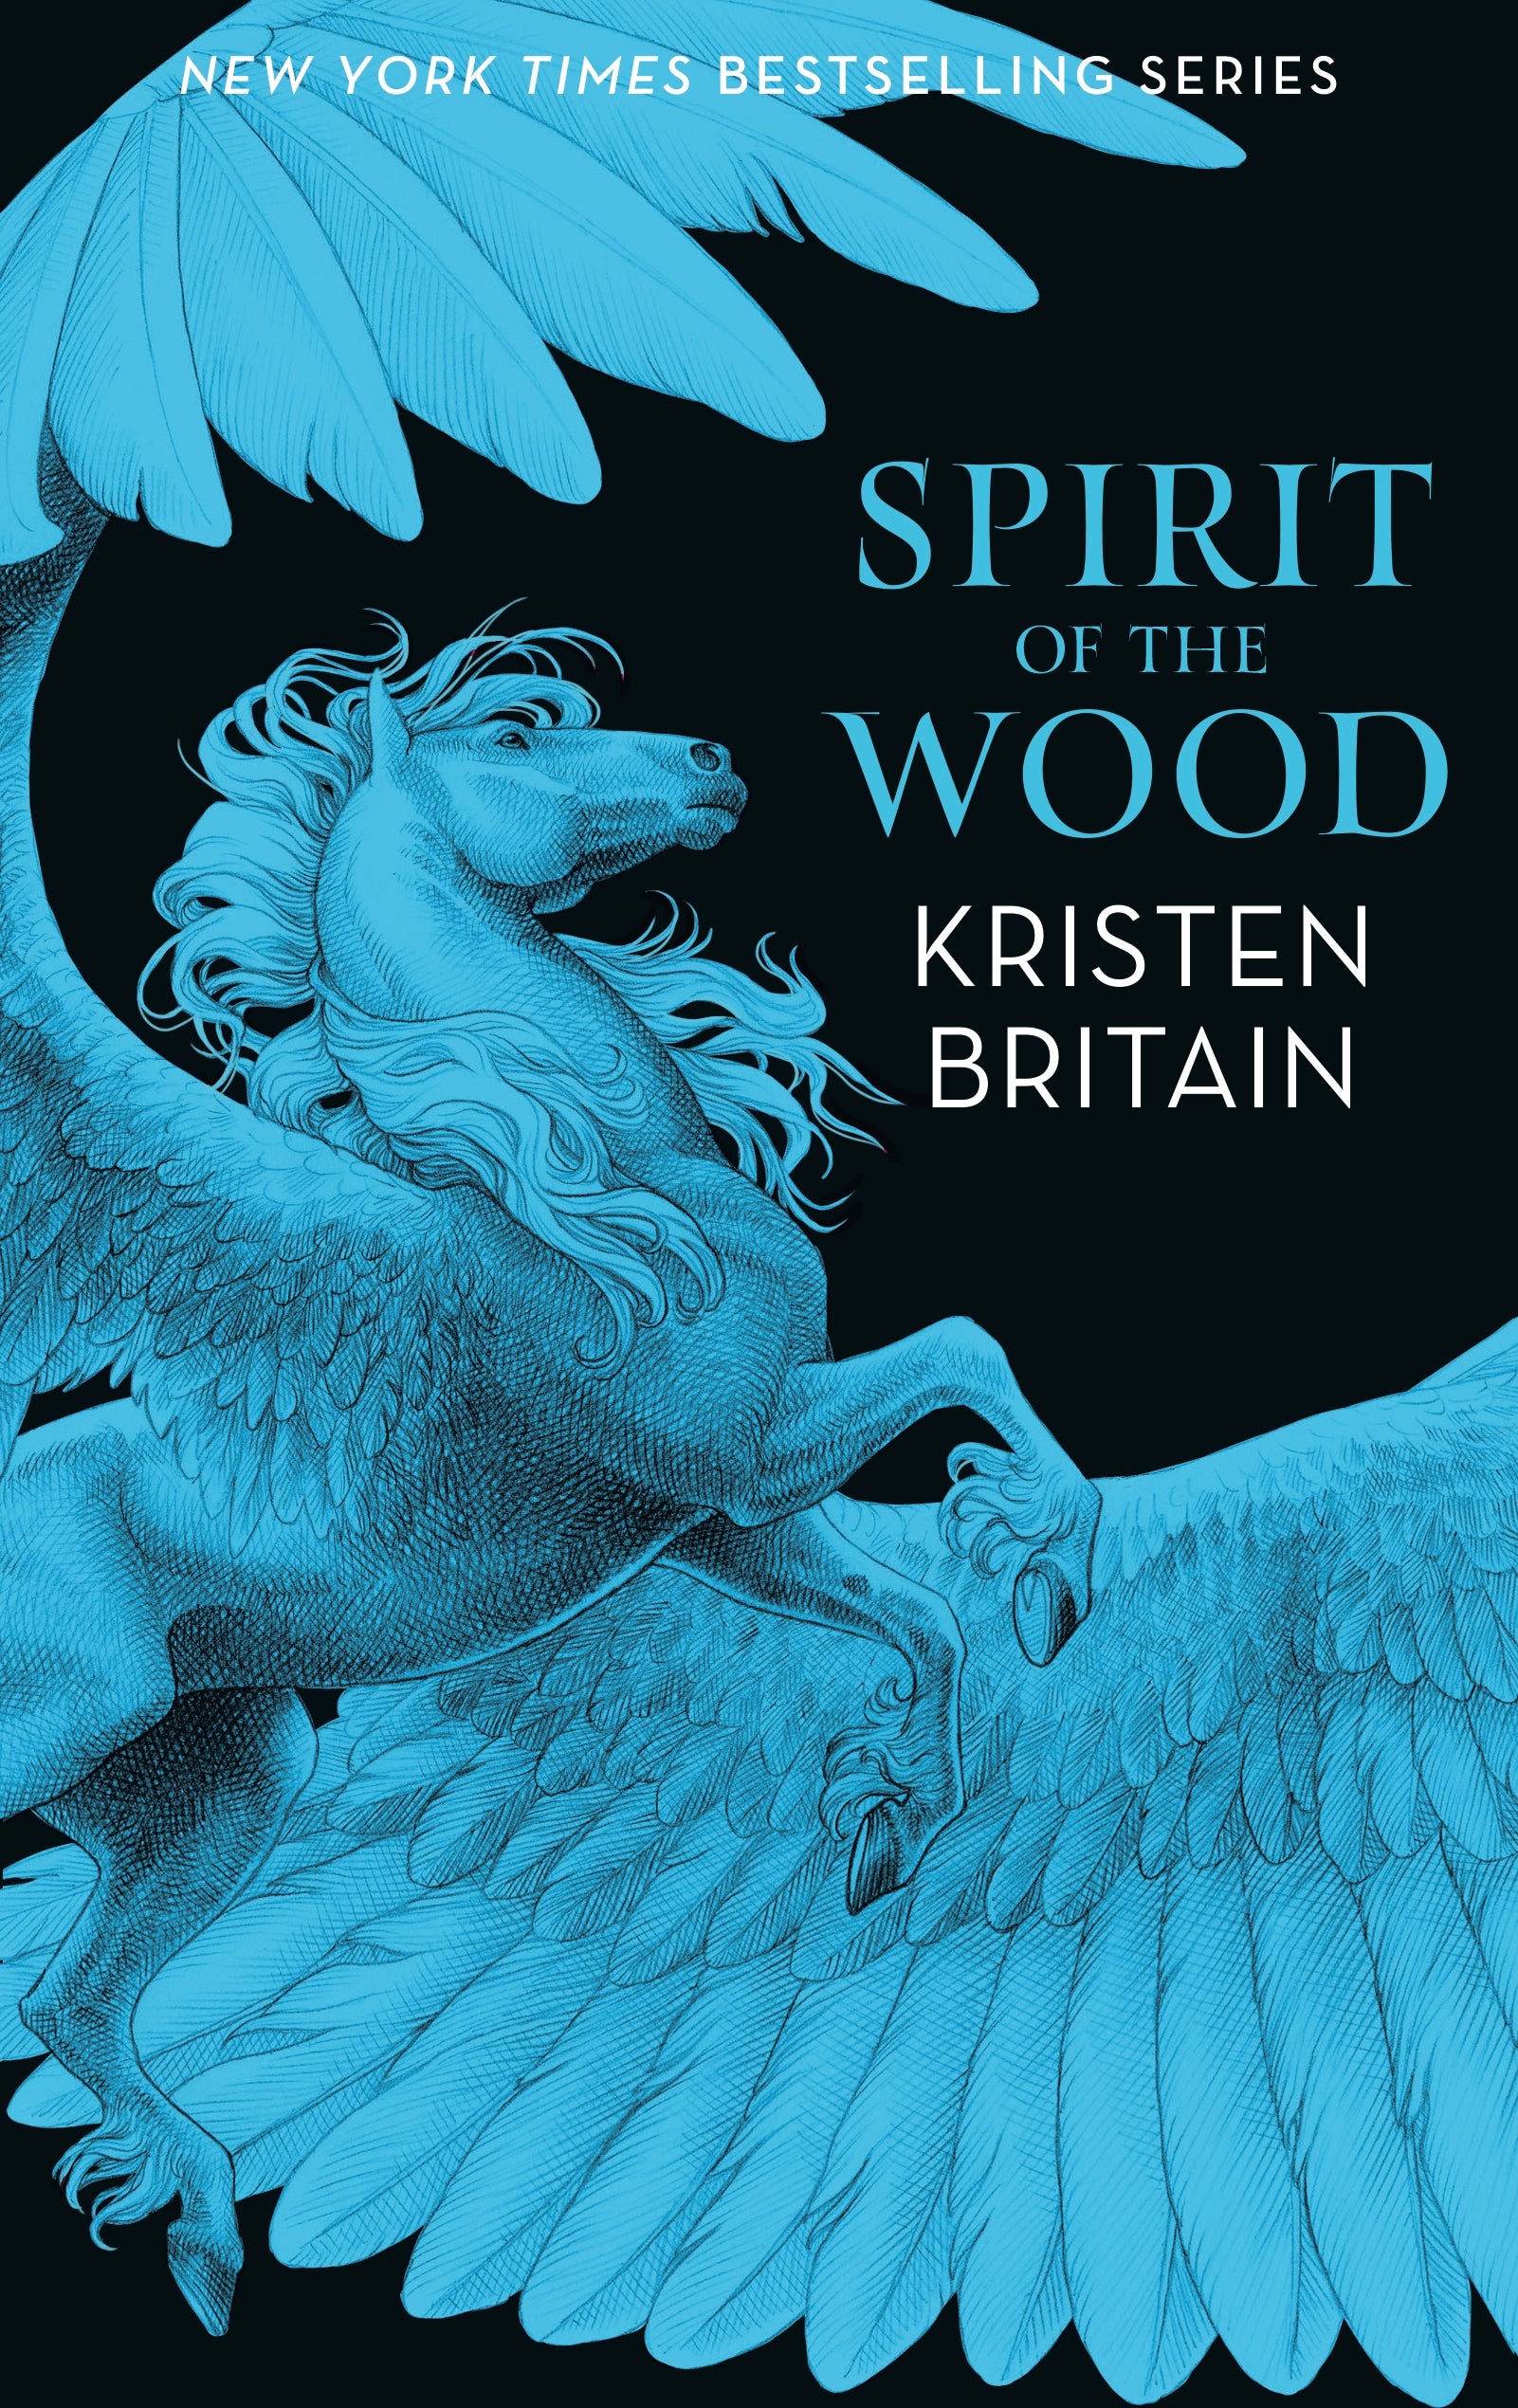 Spirit of the Wood by Kristen Britain